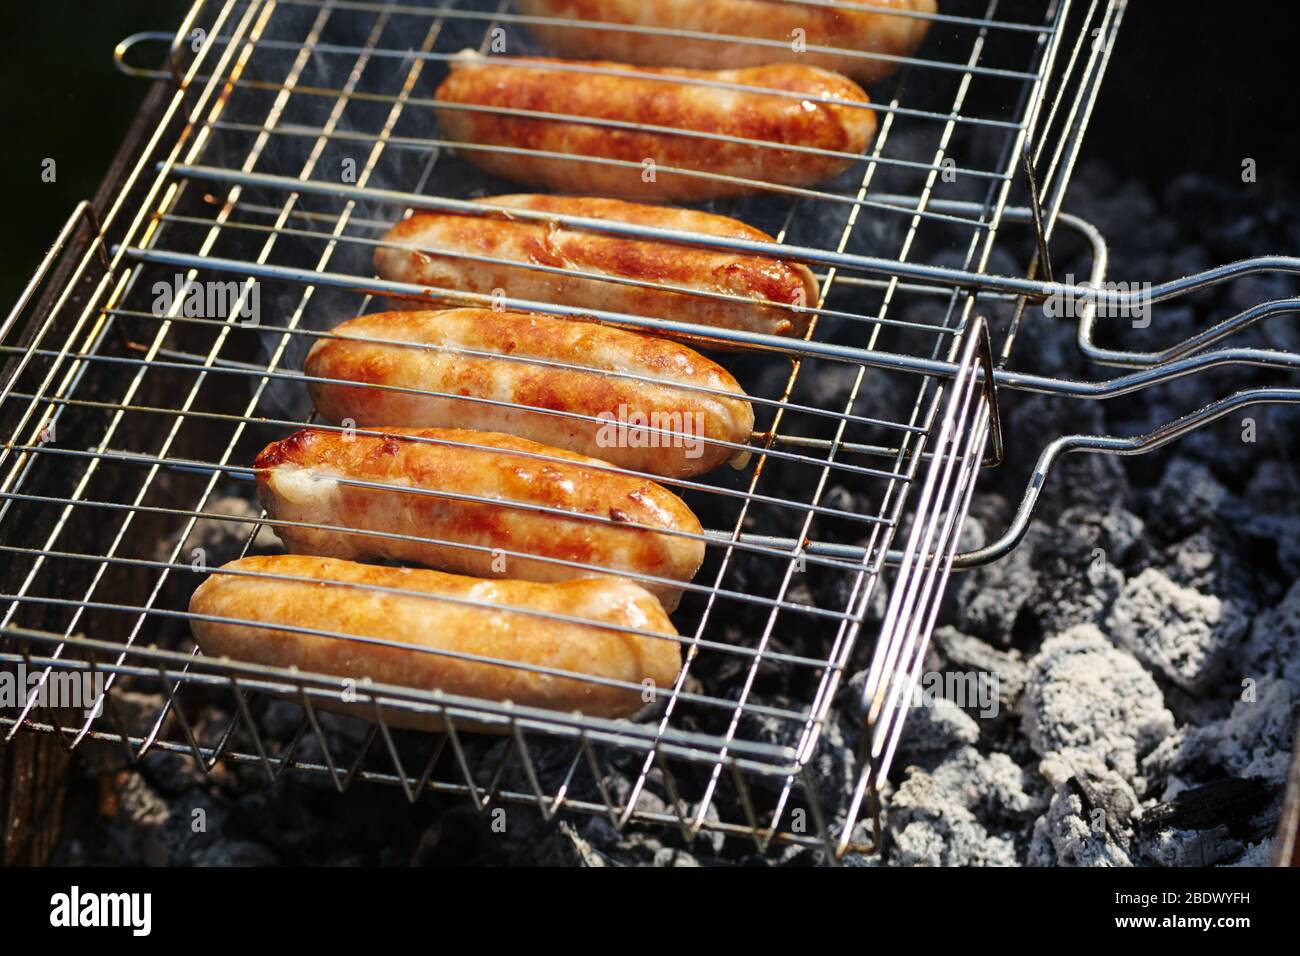 les saucisses de caoutchouc sont rôties sur des charbons. Barbecue sur le gril dans la fumée. Banque D'Images